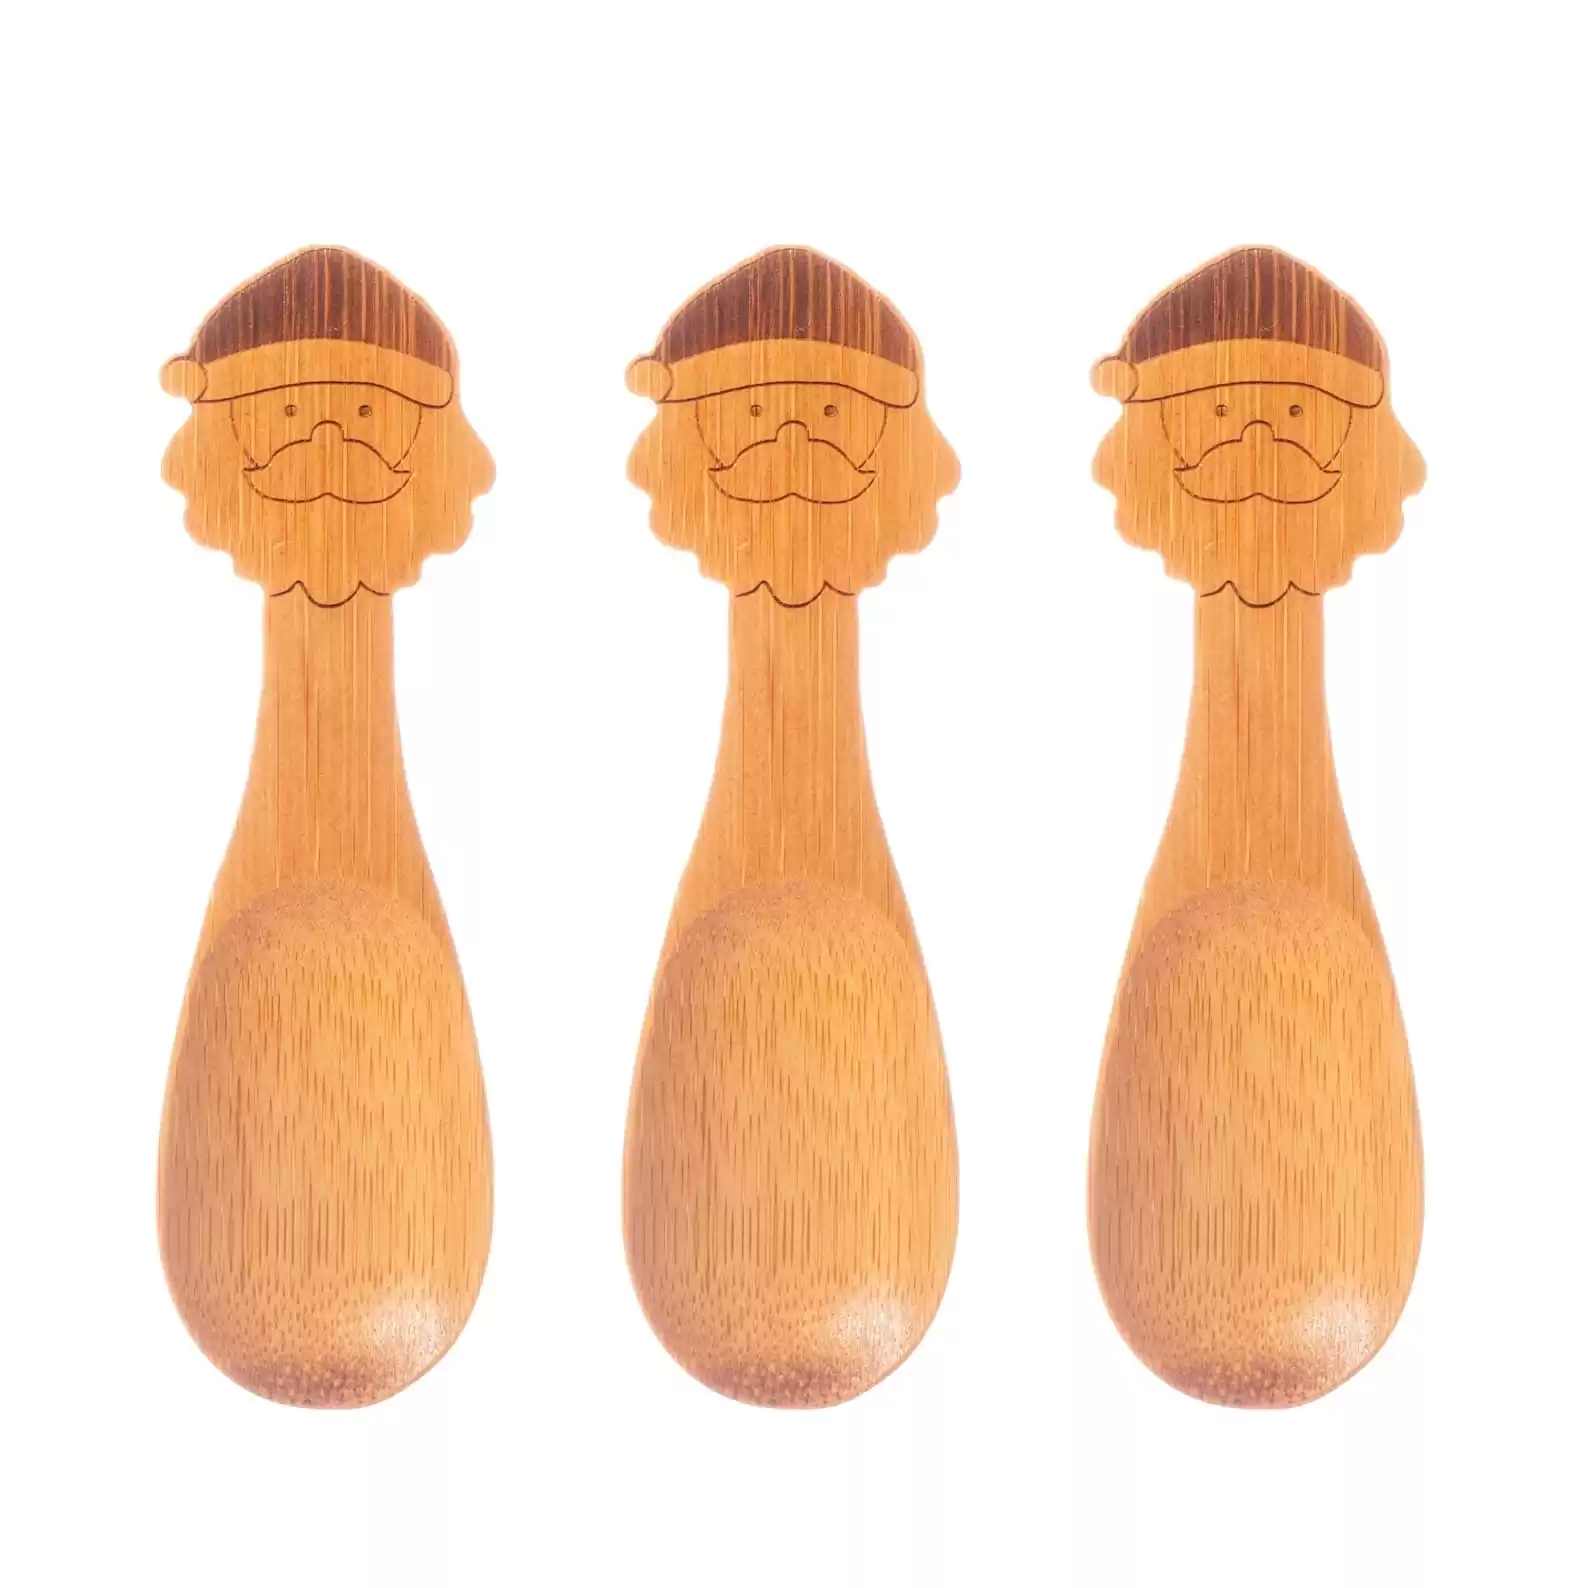 Santa Bamboo Spoons Set